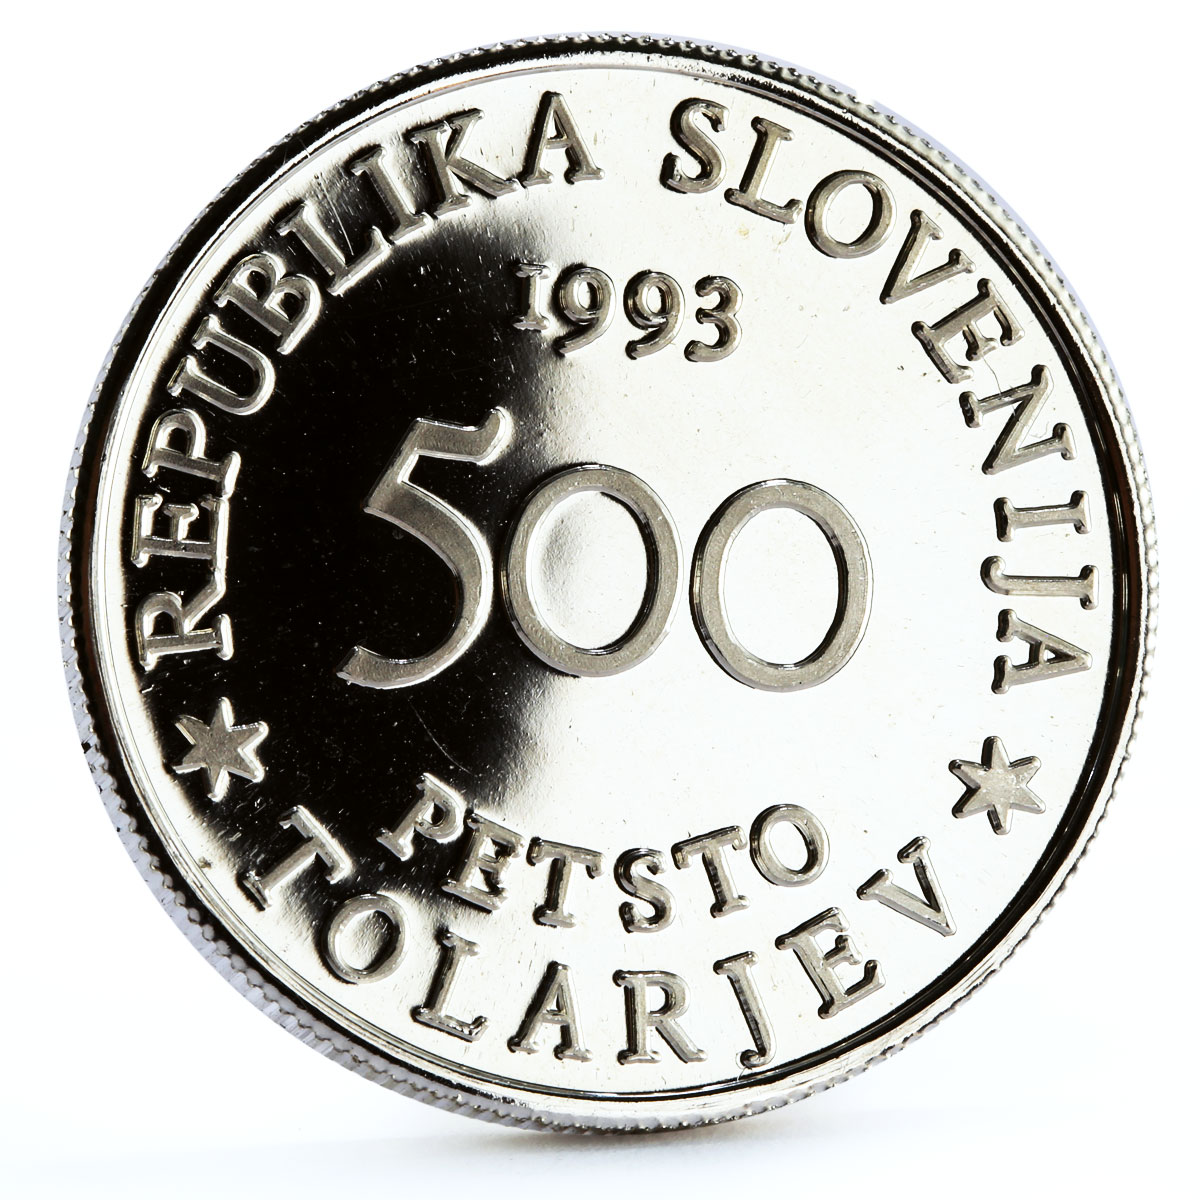 Slovenia 500 tolarjev 400 Years of the Battle for Sisak proof silver coin 1993